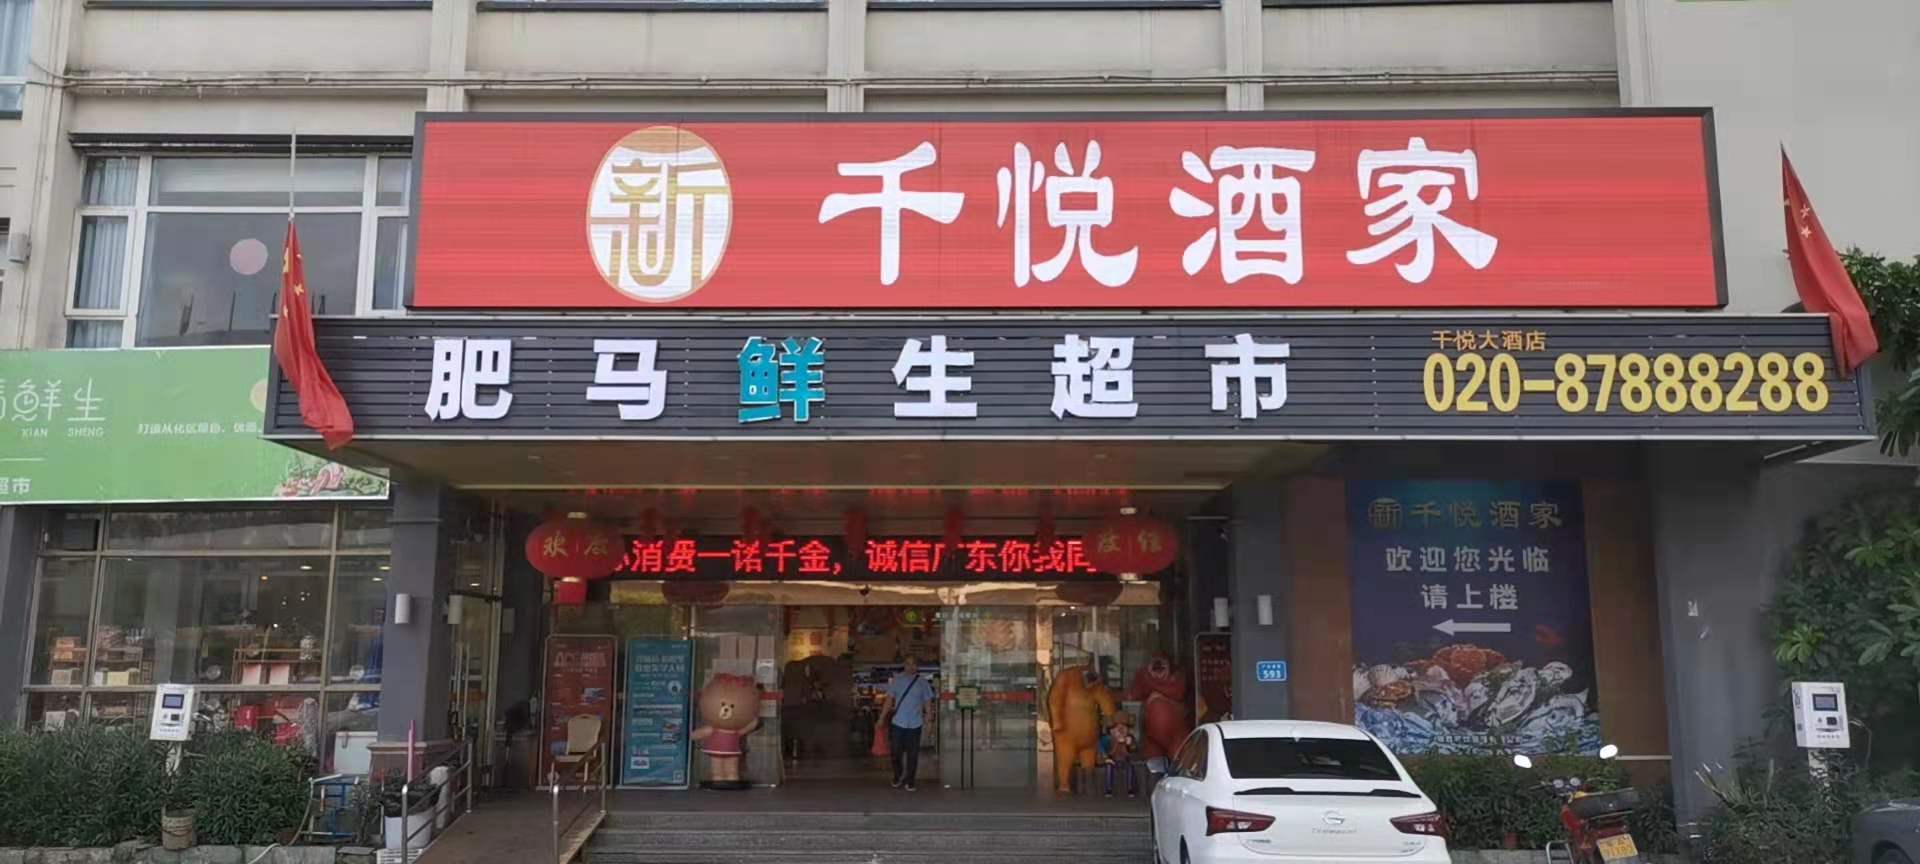 fresh shop in GuanZhou